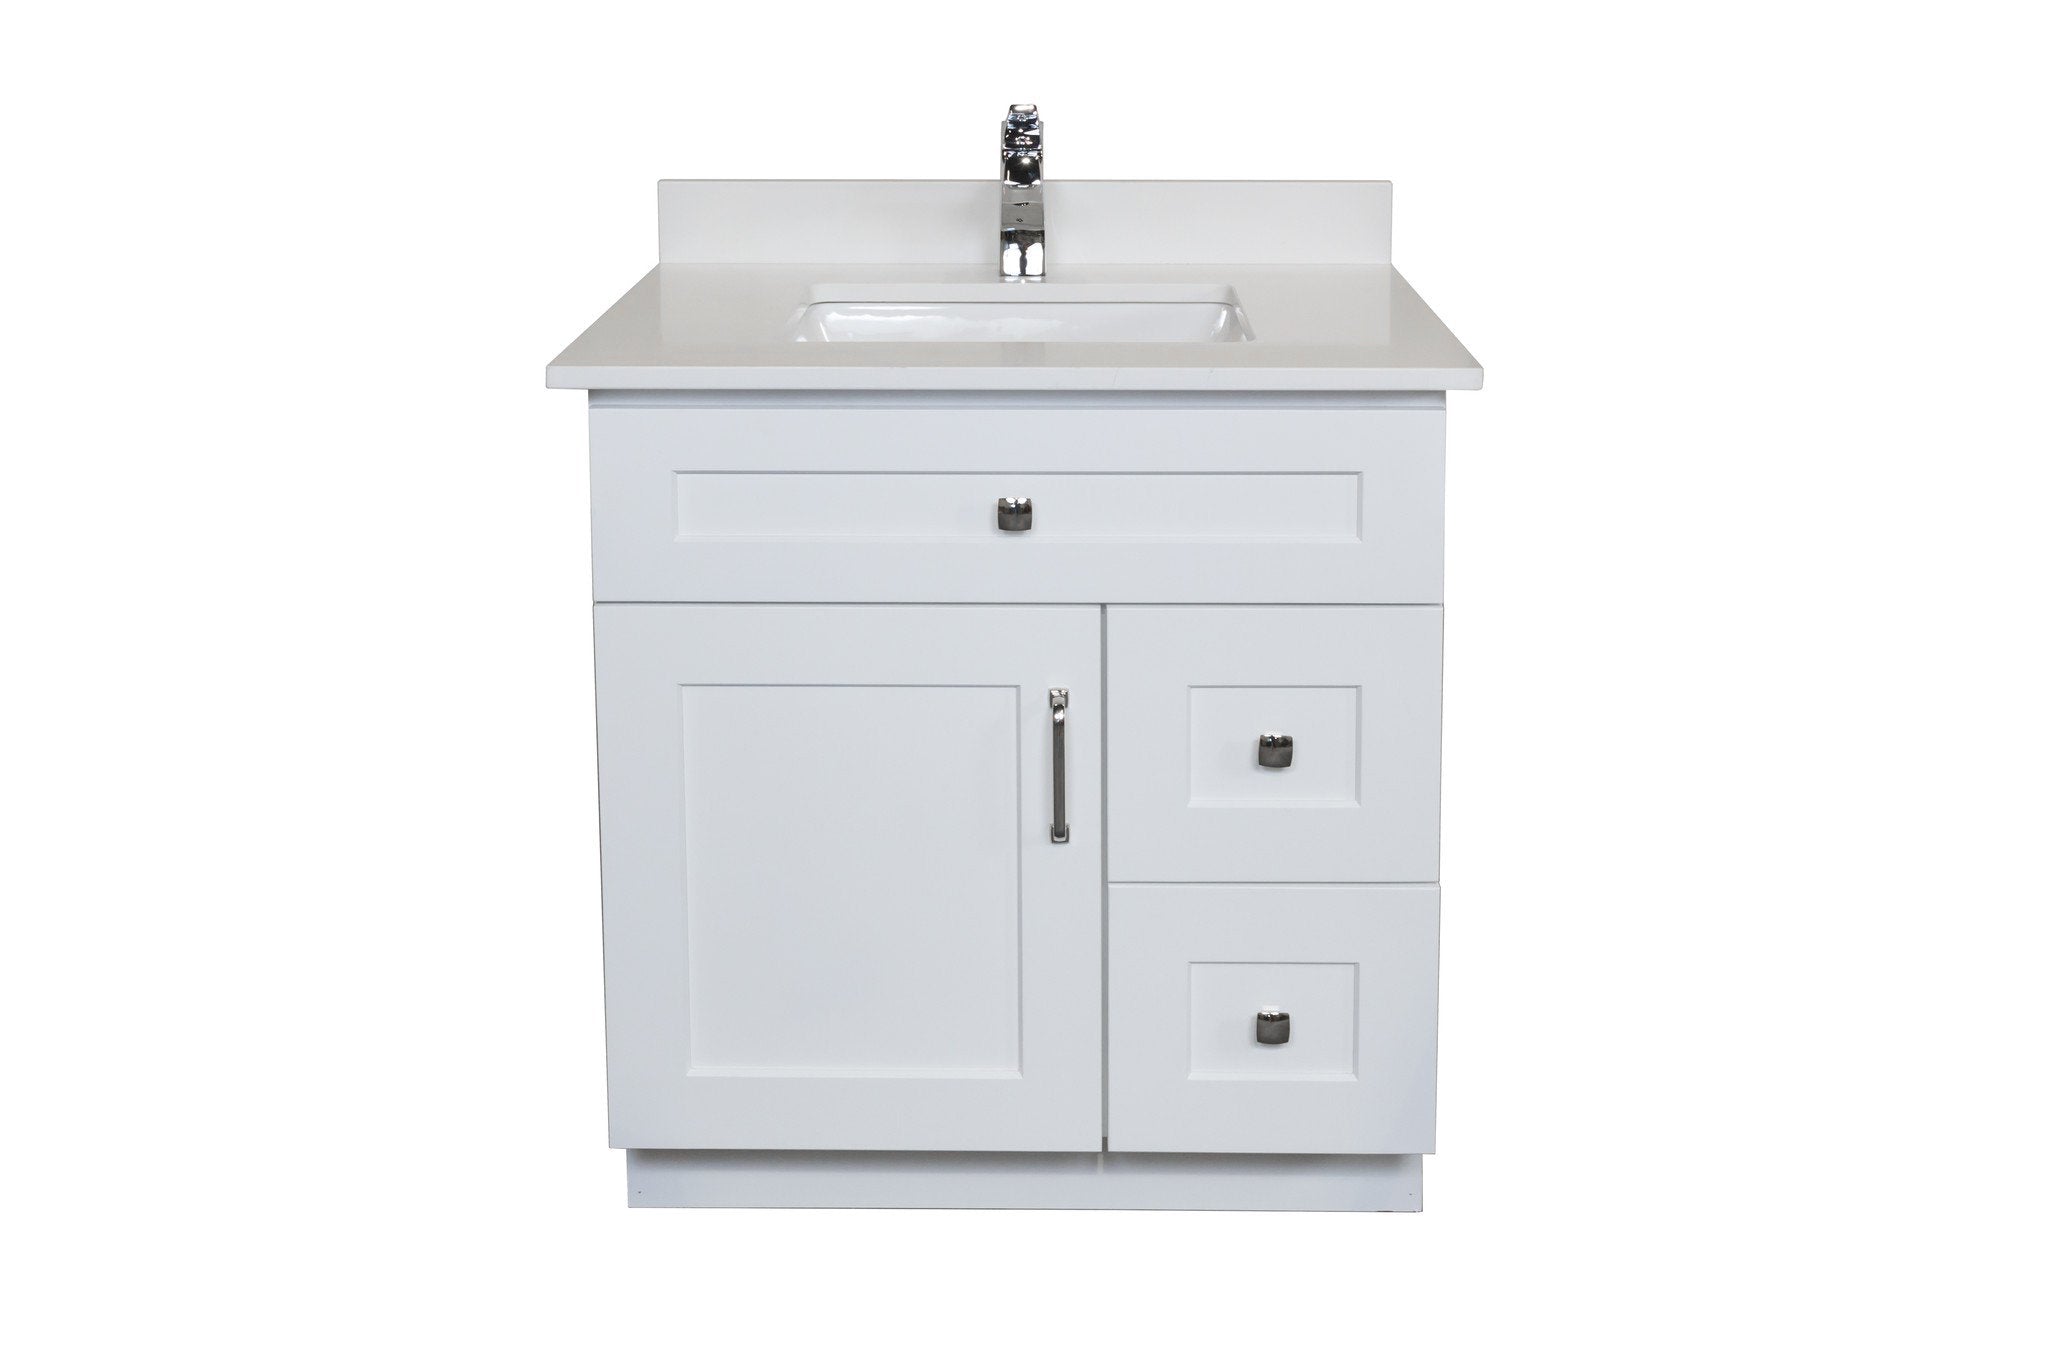 30 ̎ Maple Wood Bathroom Vanity in White - Combo ...